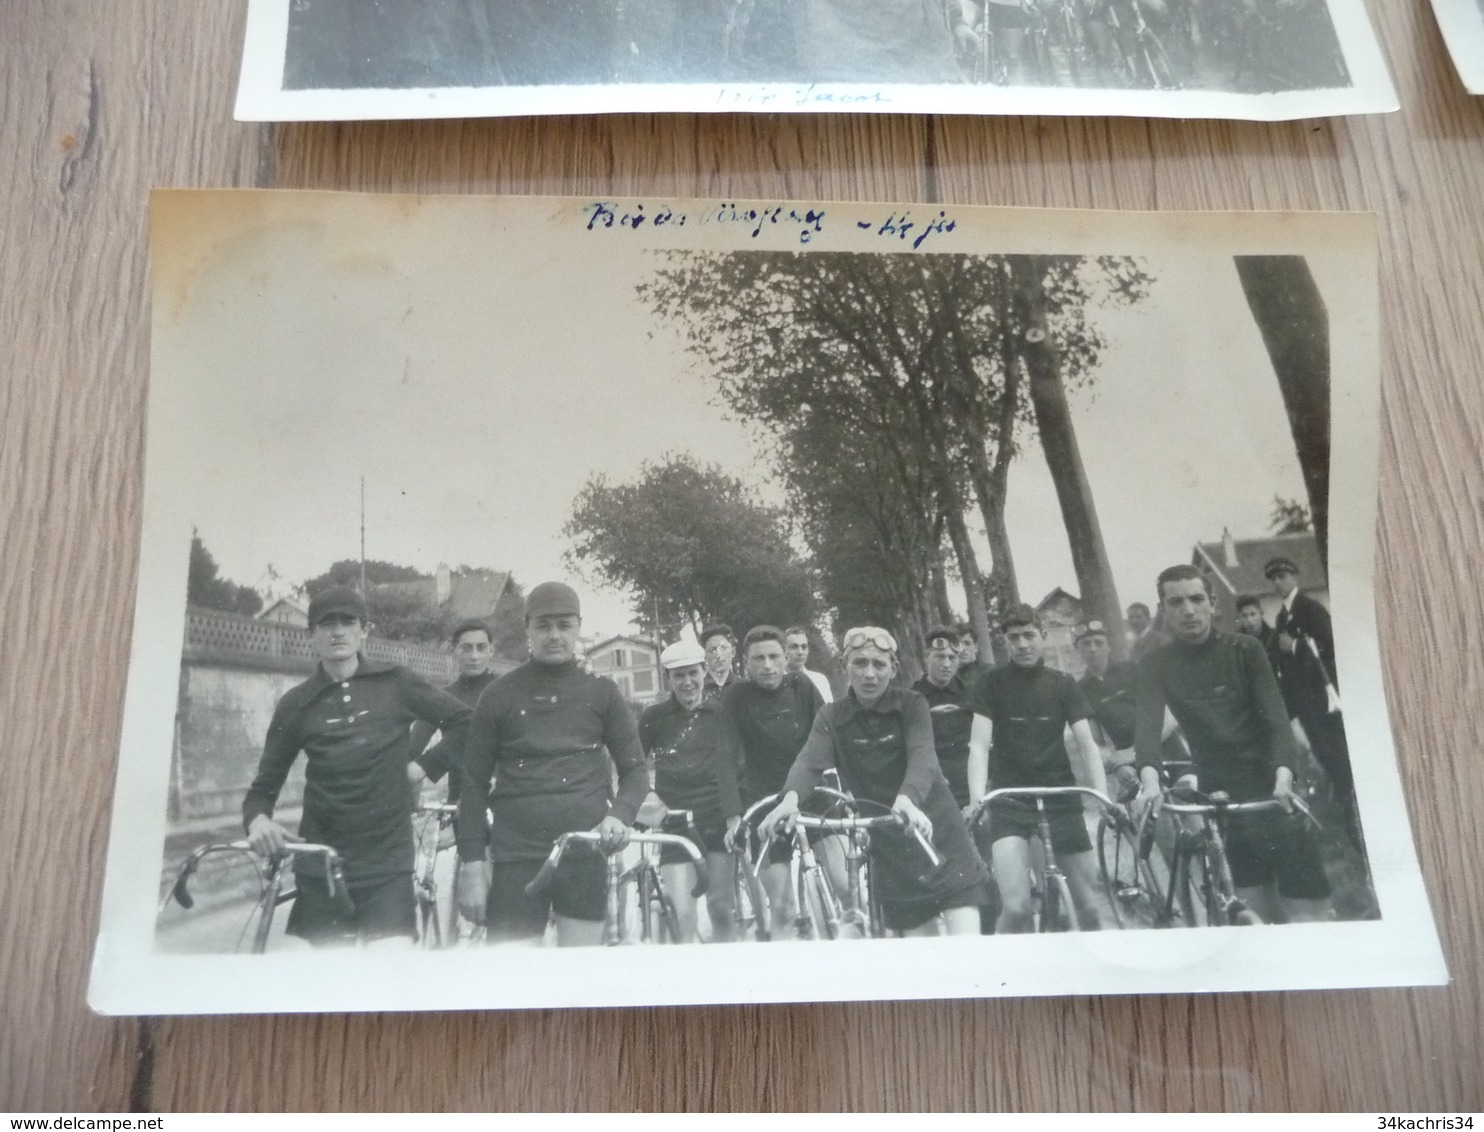 Cyclisme course cycliste région parisienne Lot 59 photos amateurs tout état adhérences au dos dont Prix Jacot